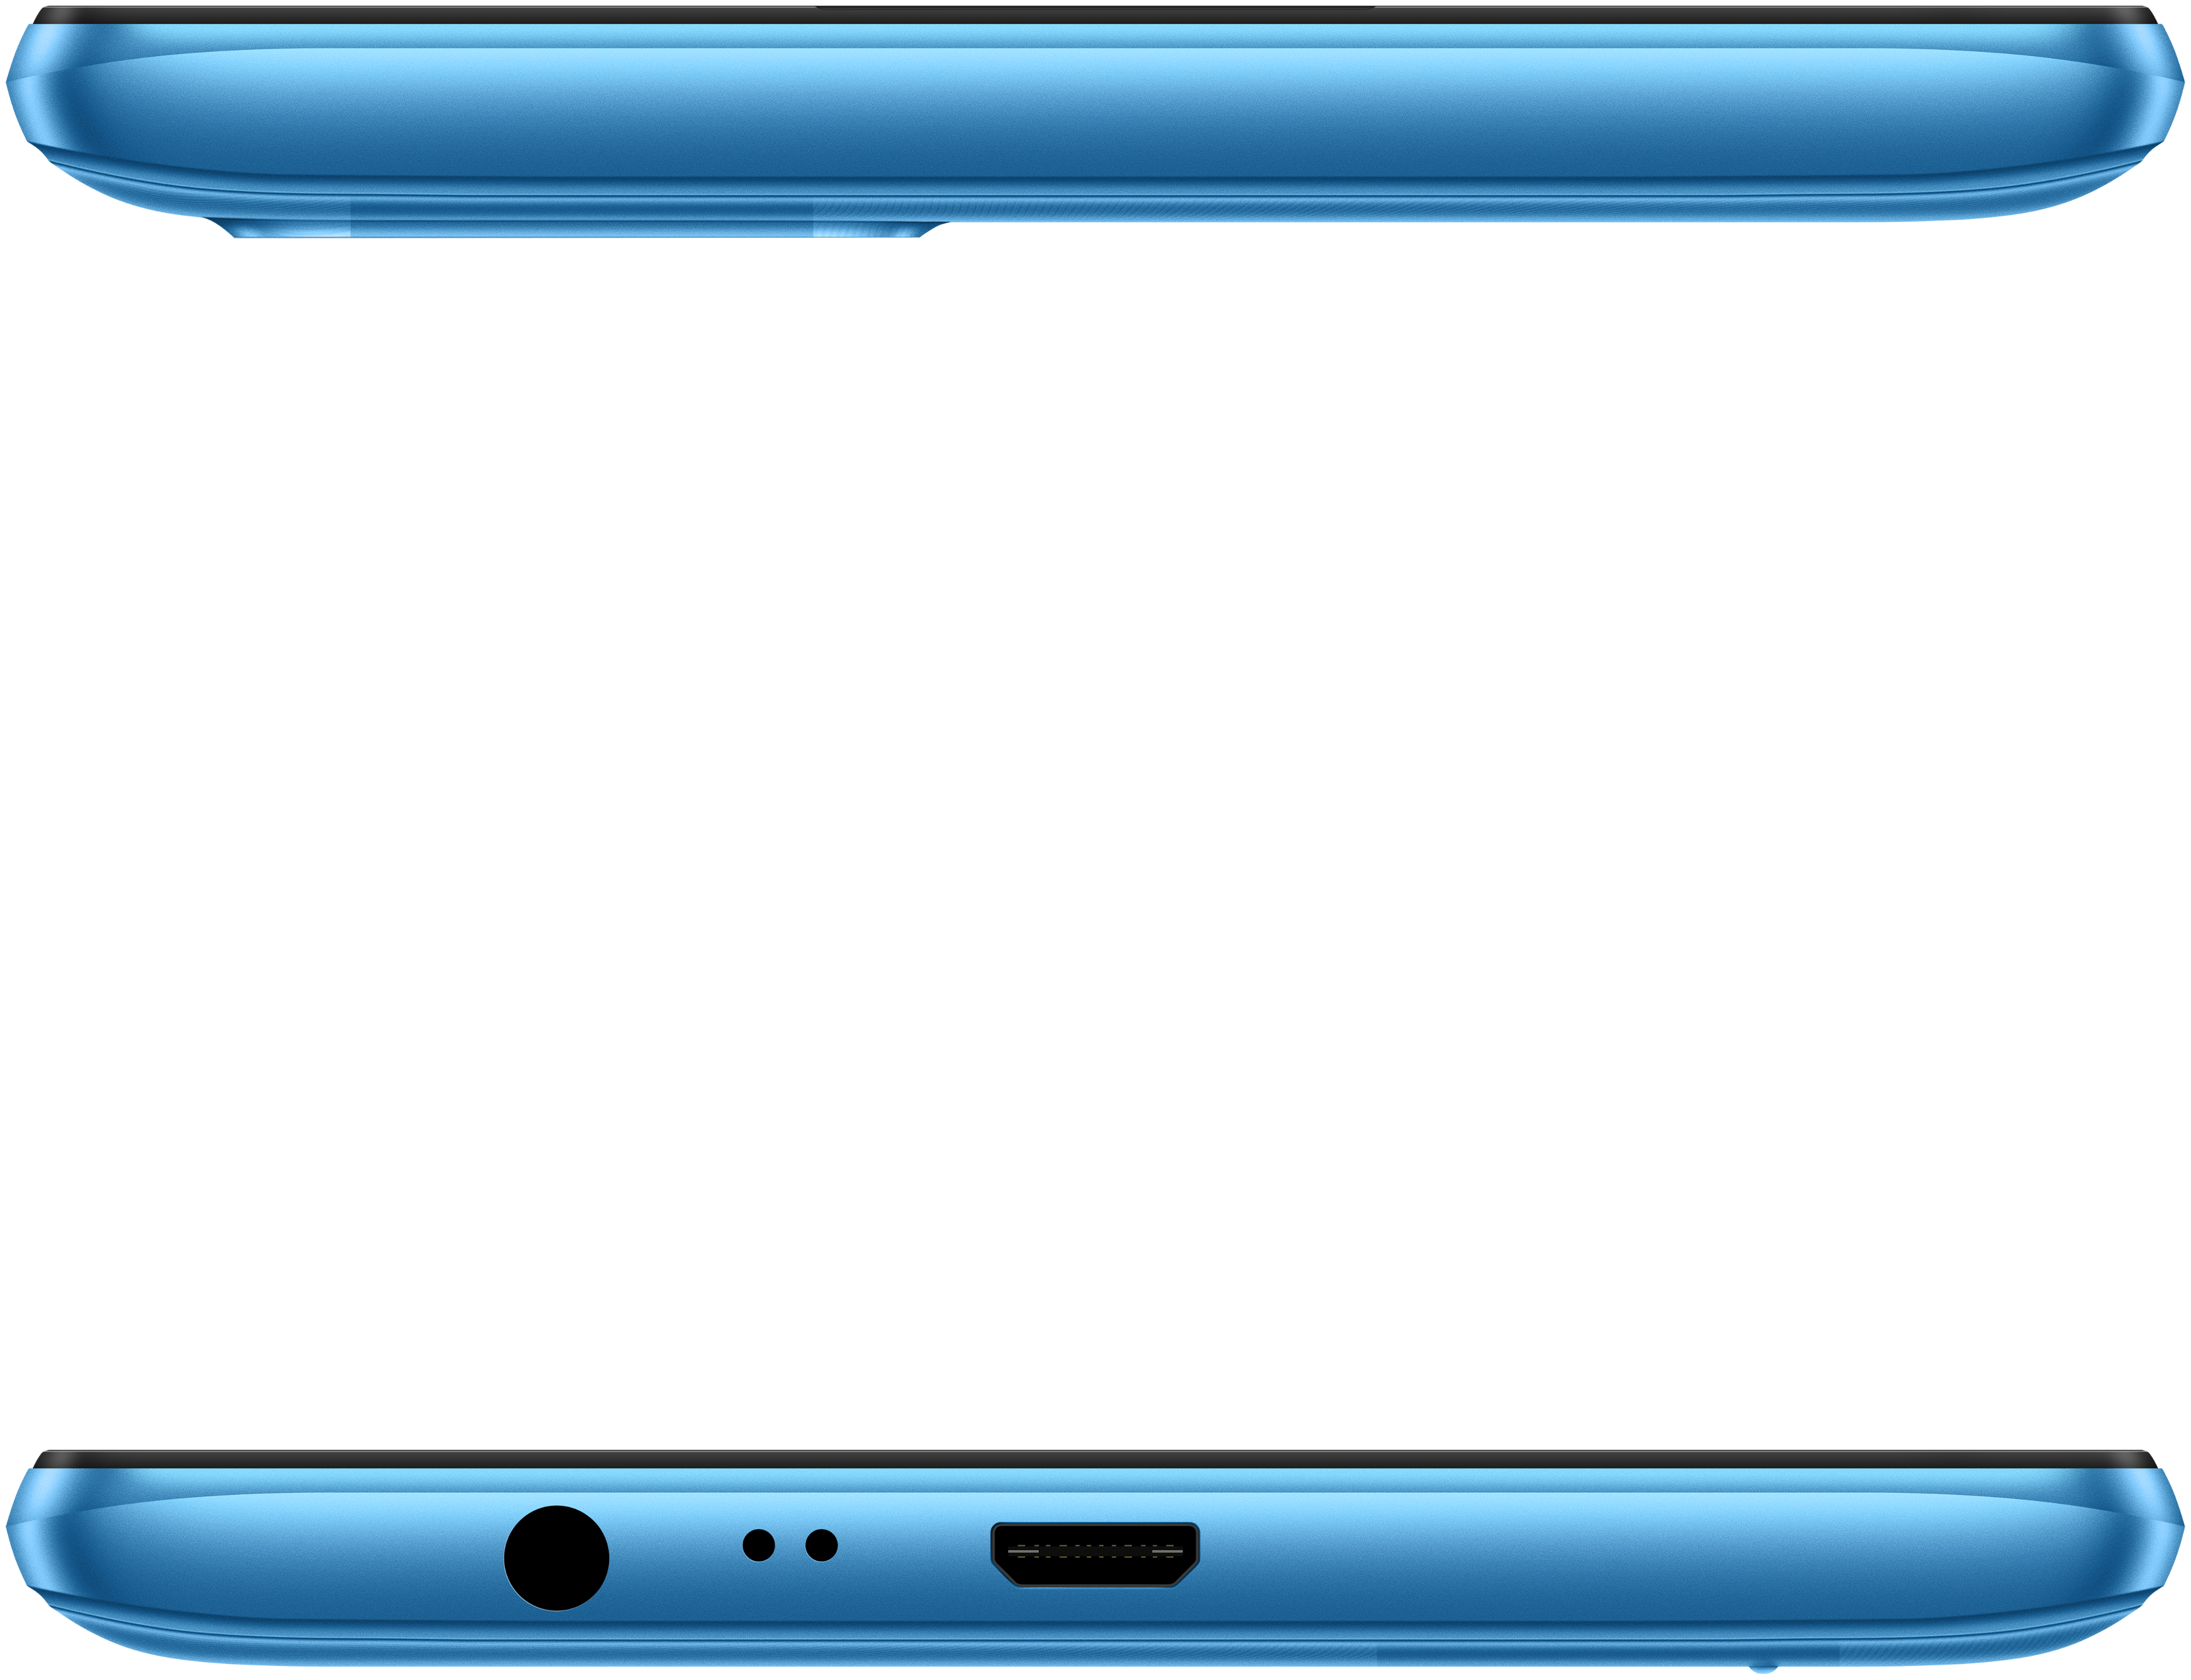 картинка Realme C11 2021 2/32GB голубое озеро (RU) от магазина Симпатия